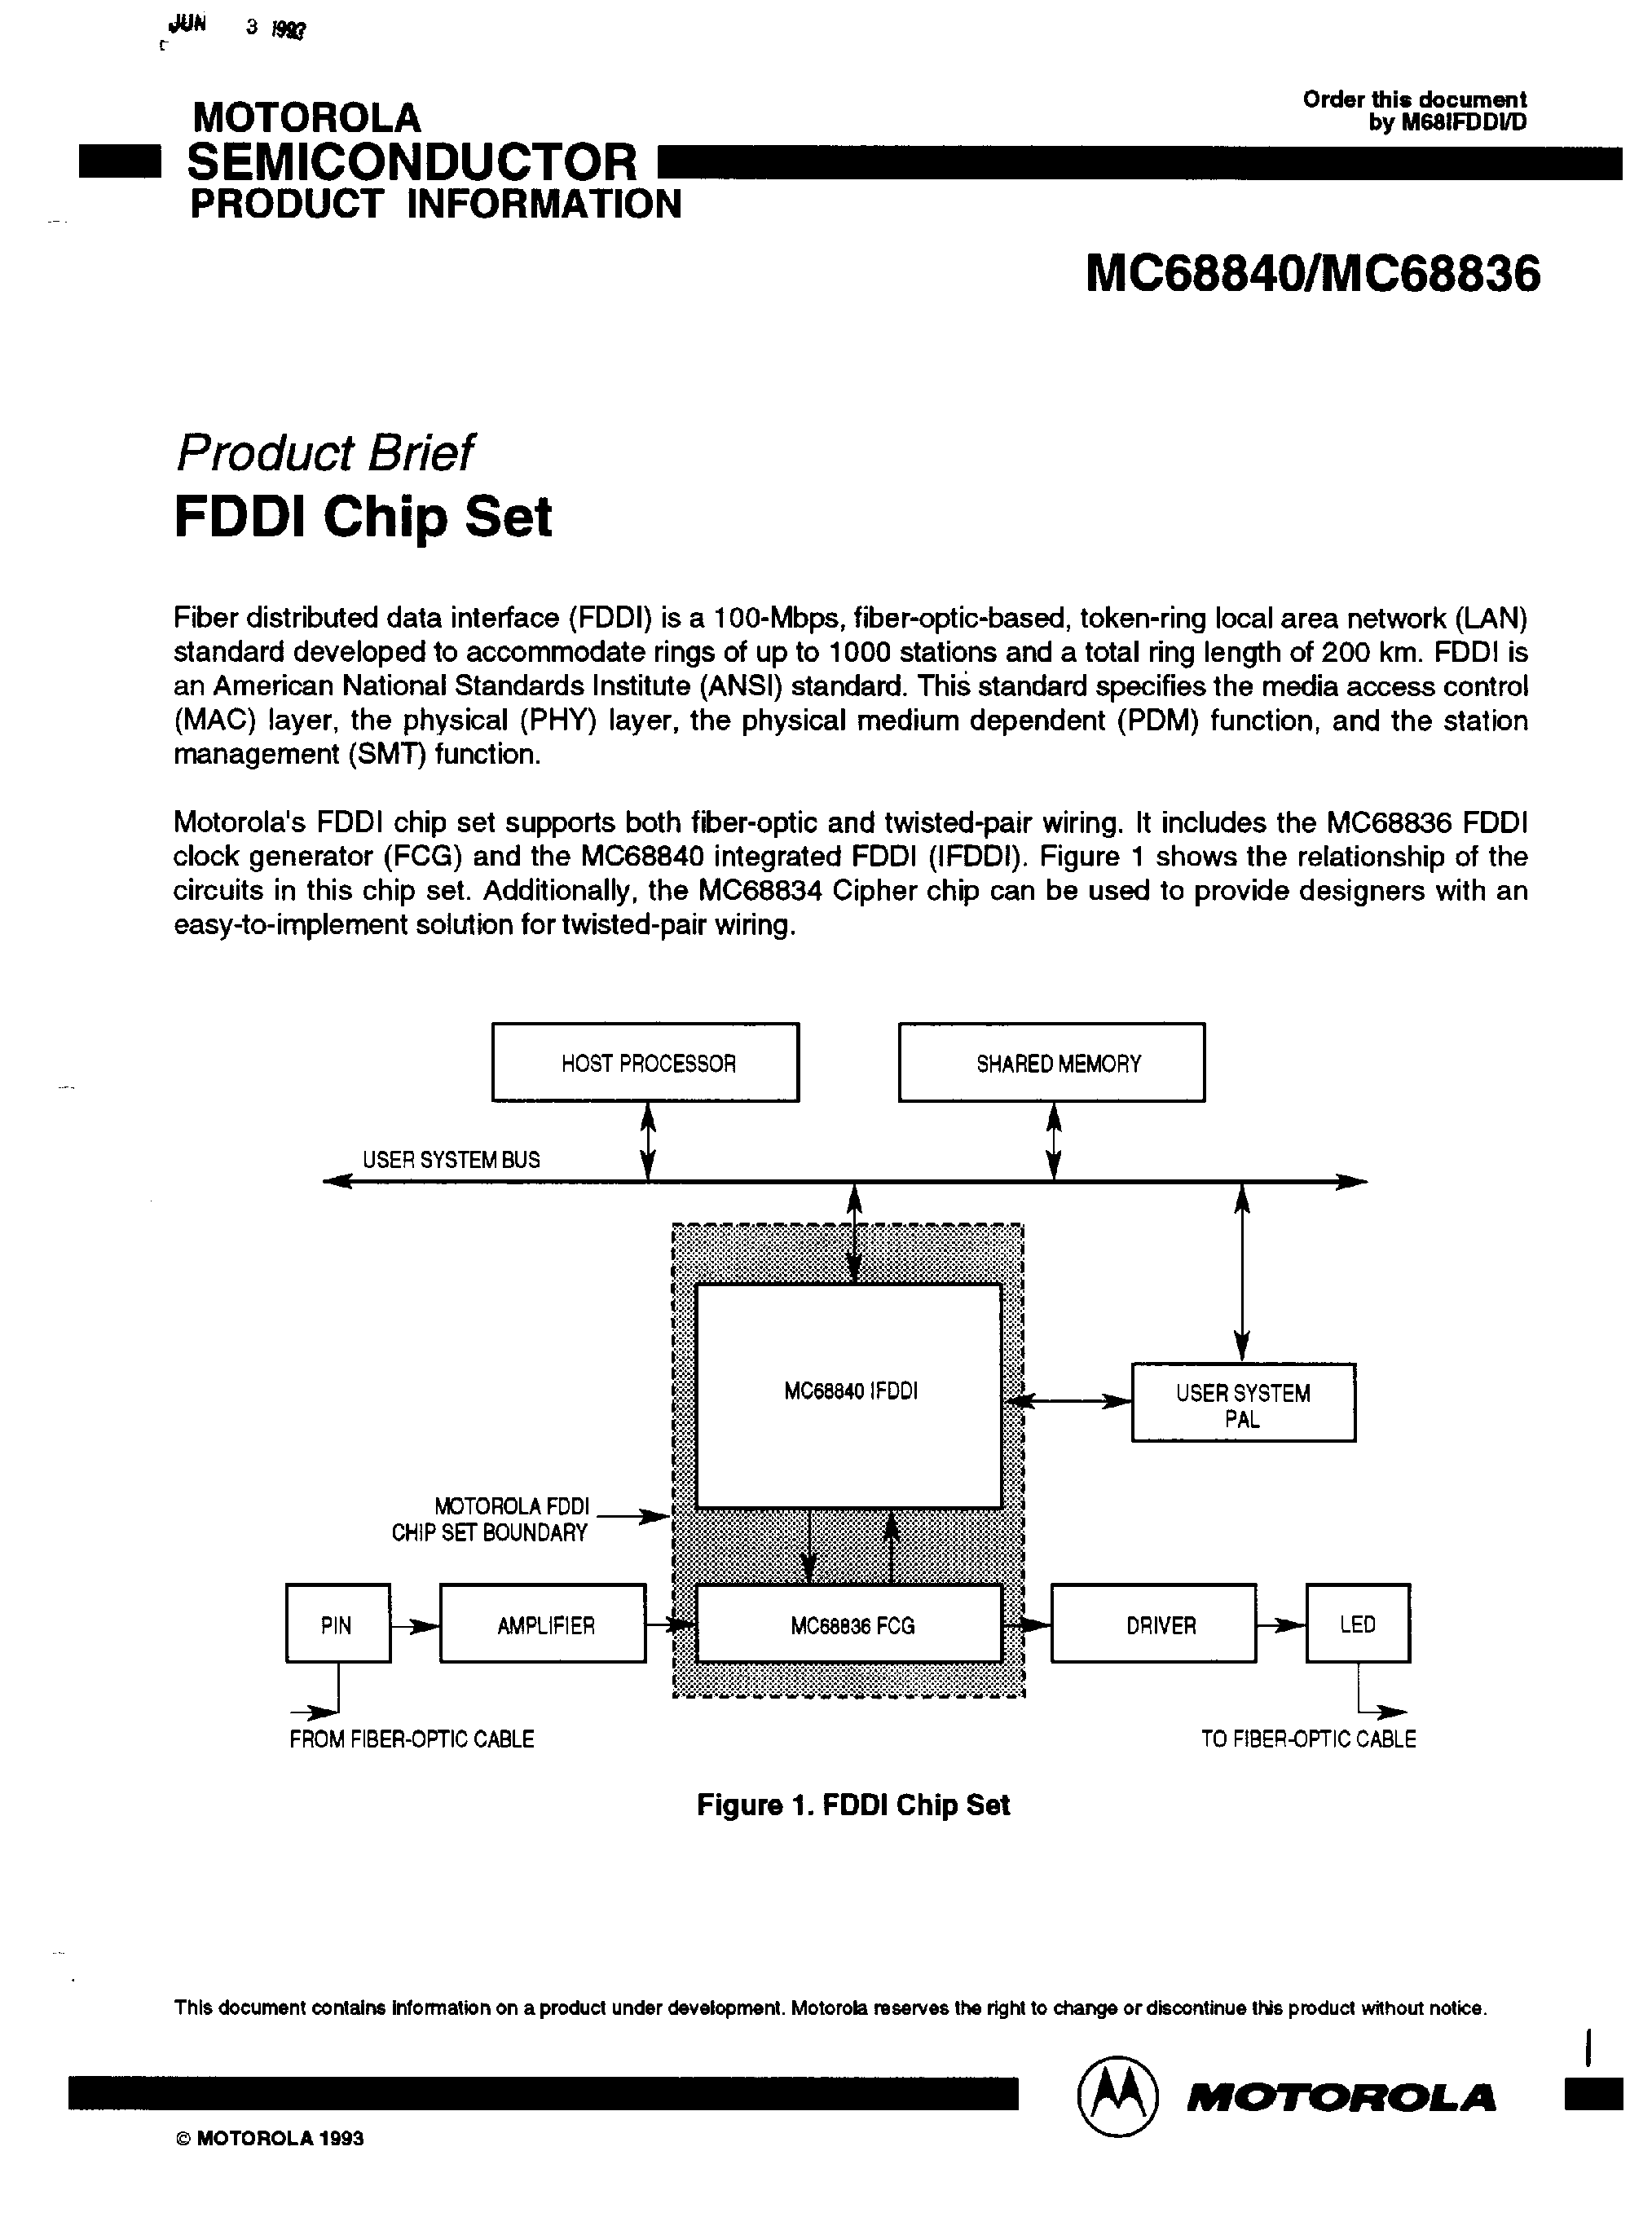 Datasheet MC68836 - (MC68840 / MC68836) FDDI Chip Set page 1